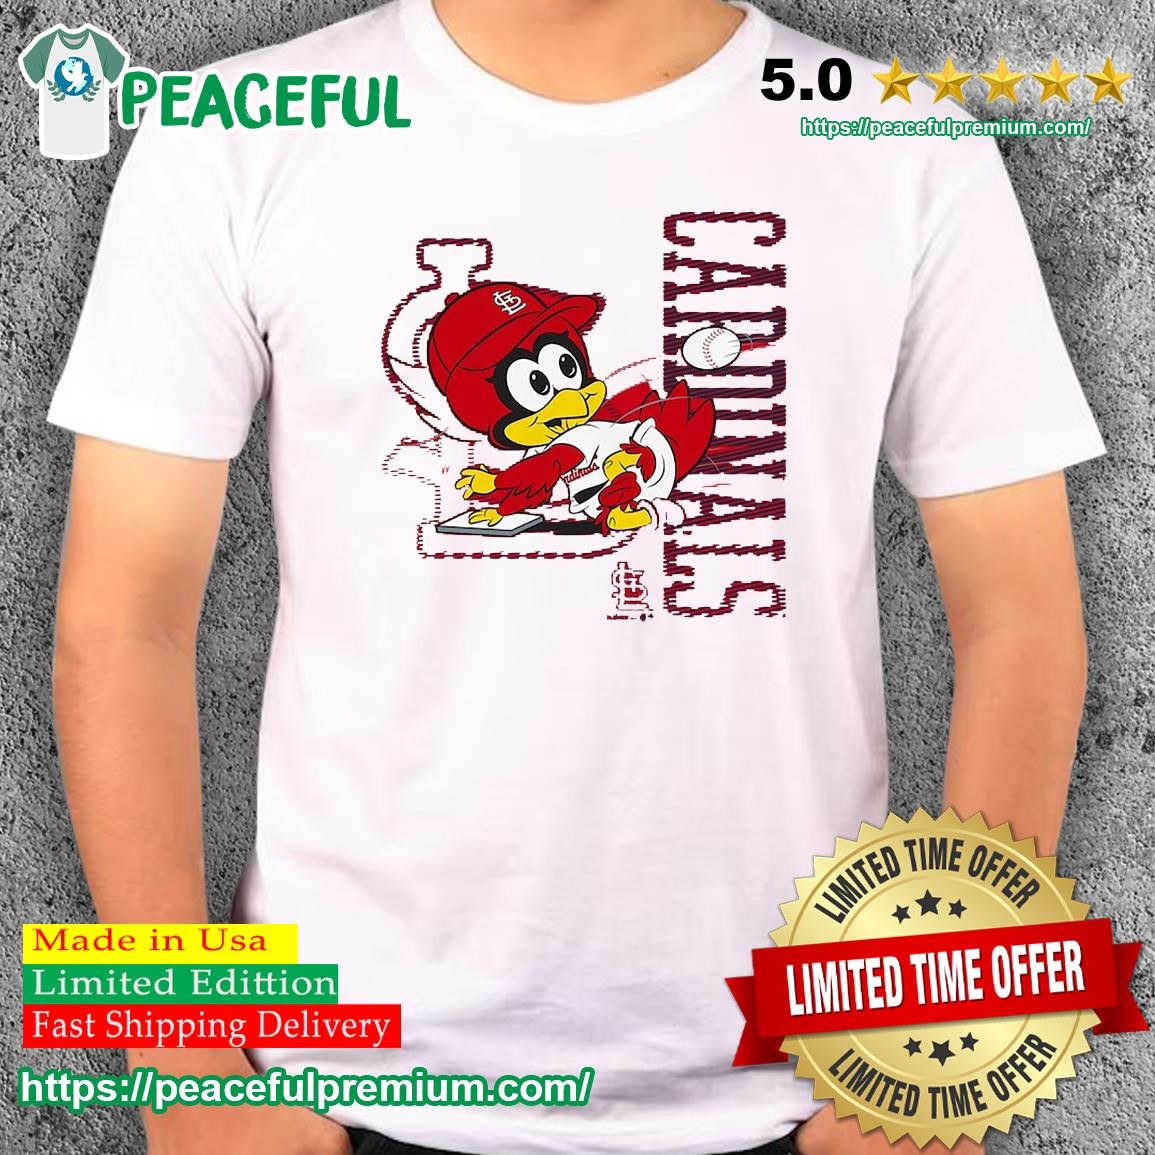 St. Louis Cardinals Mascot Fredbird Shirt, hoodie, sweater, long sleeve and  tank top